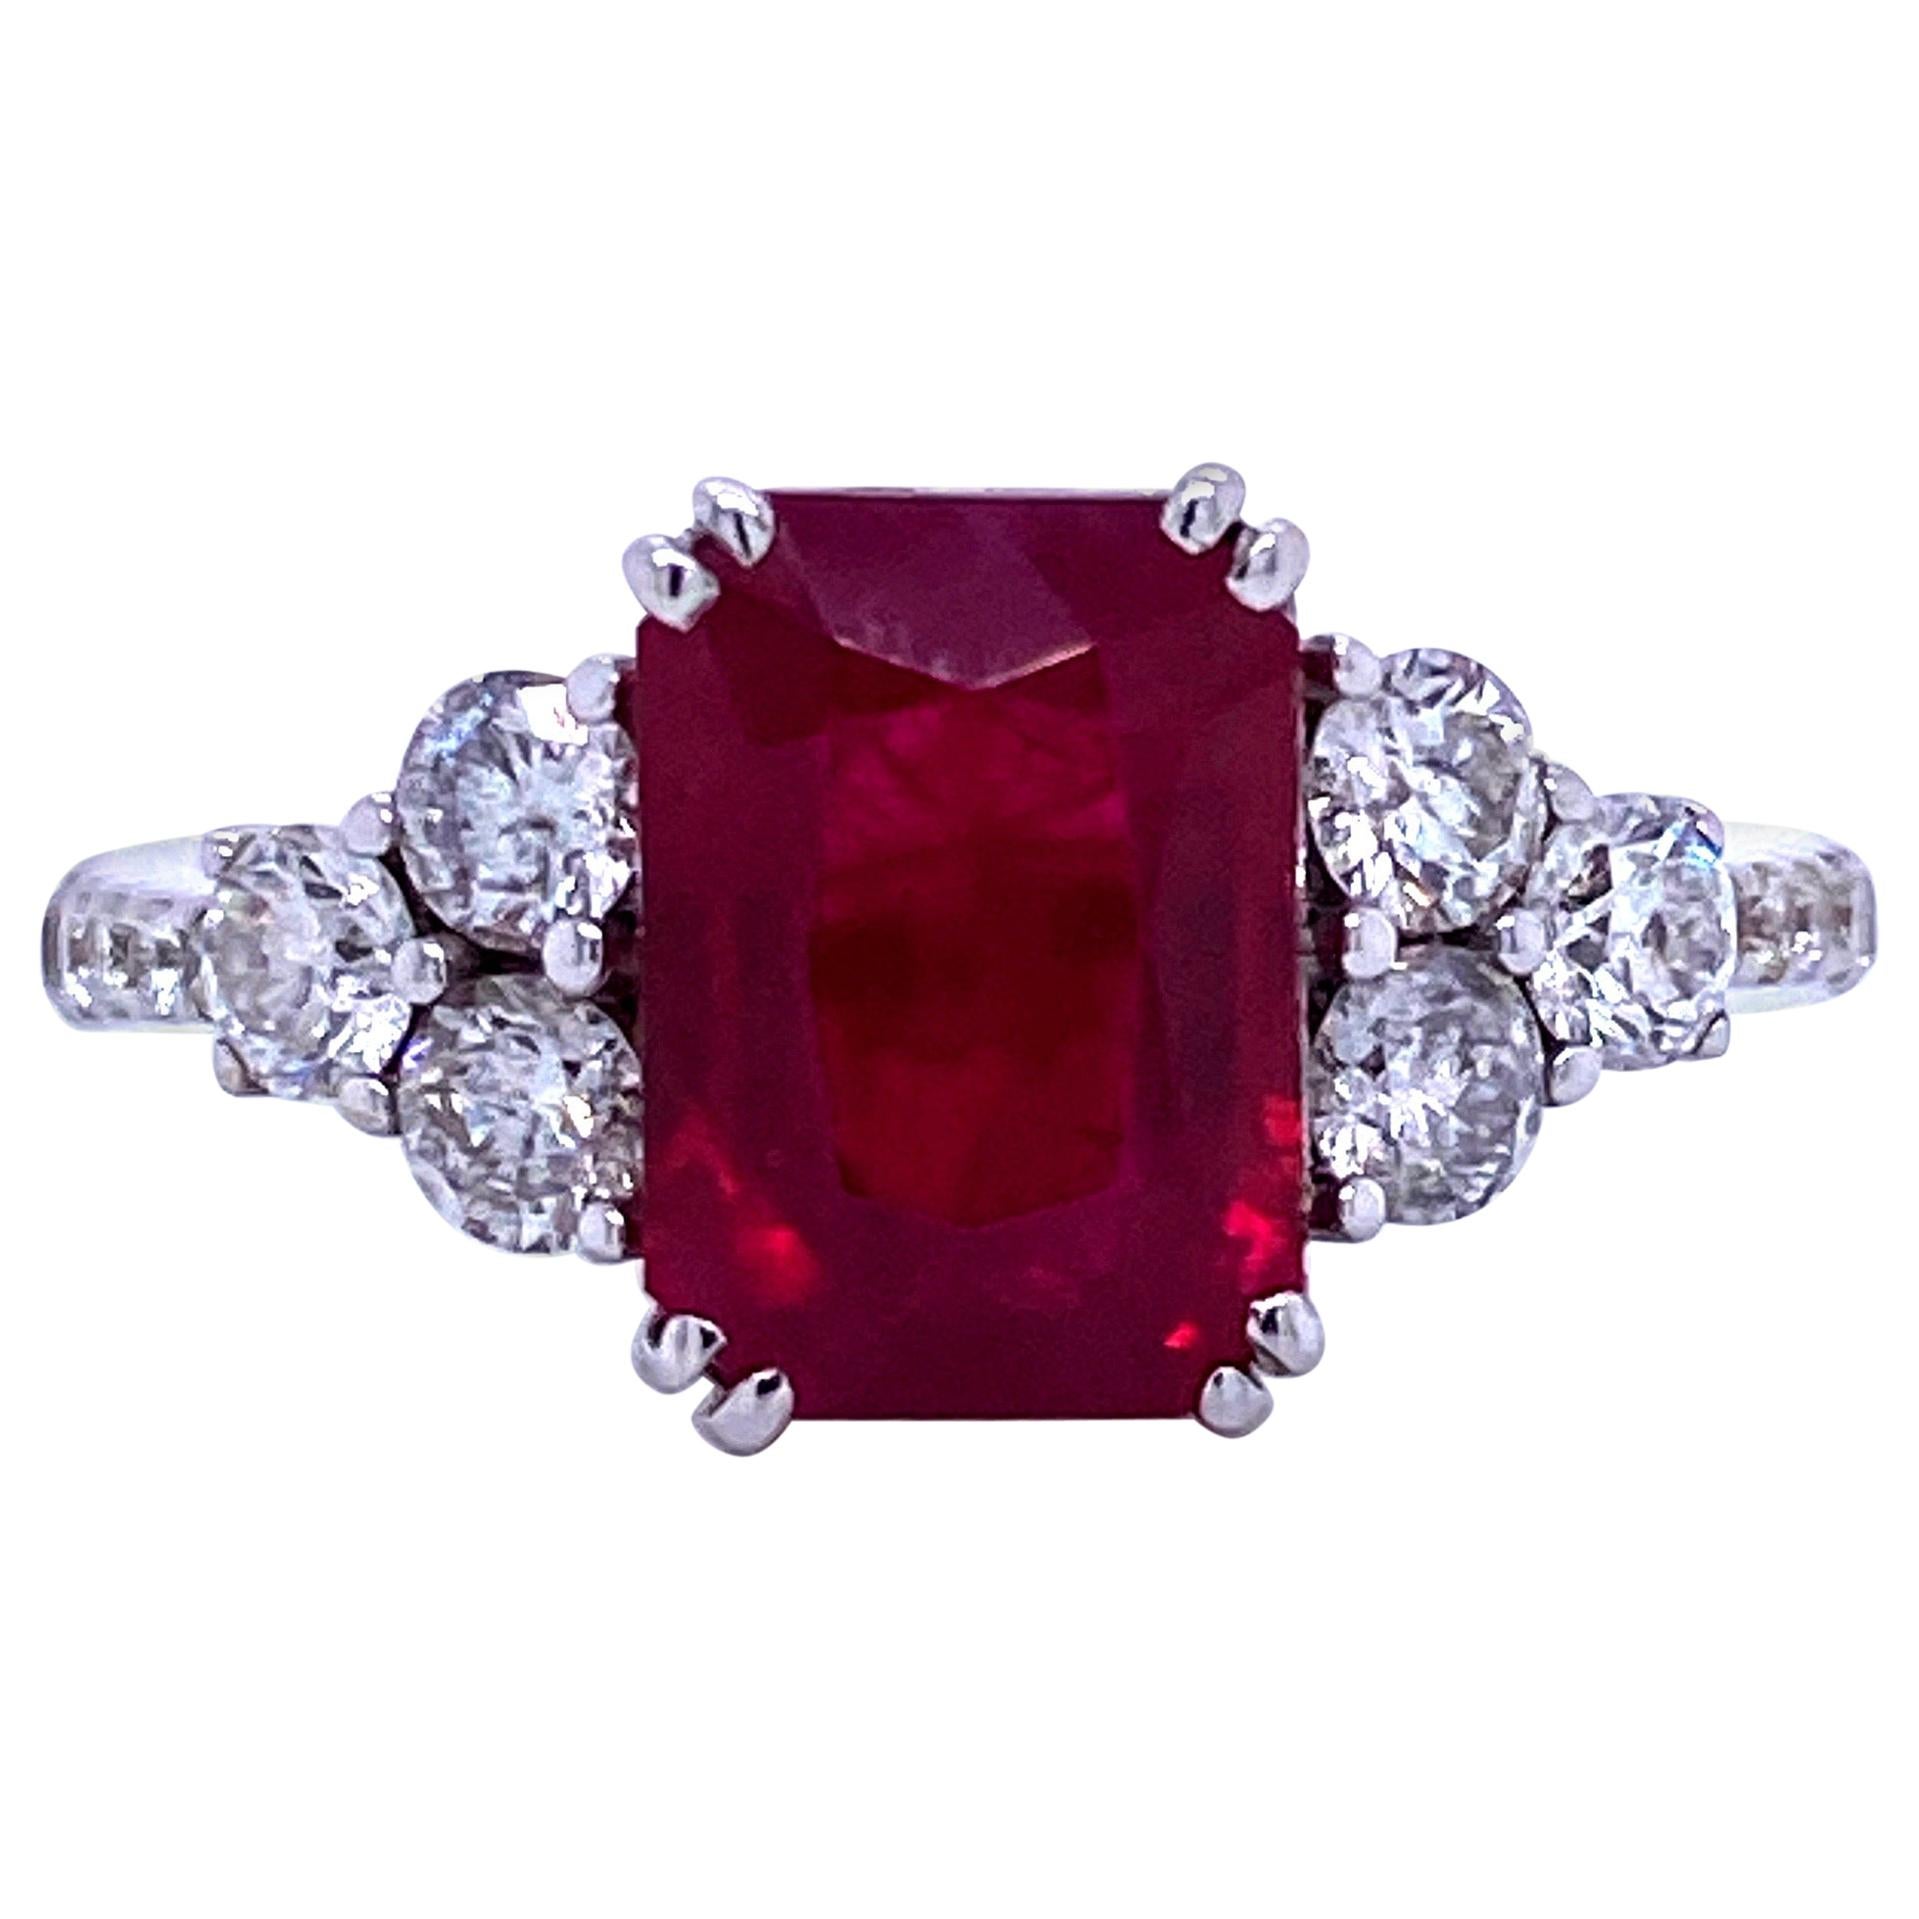 Burma Ruby Diamond Ring 4.79 Carat AGL Certified 18 Karat White Gold